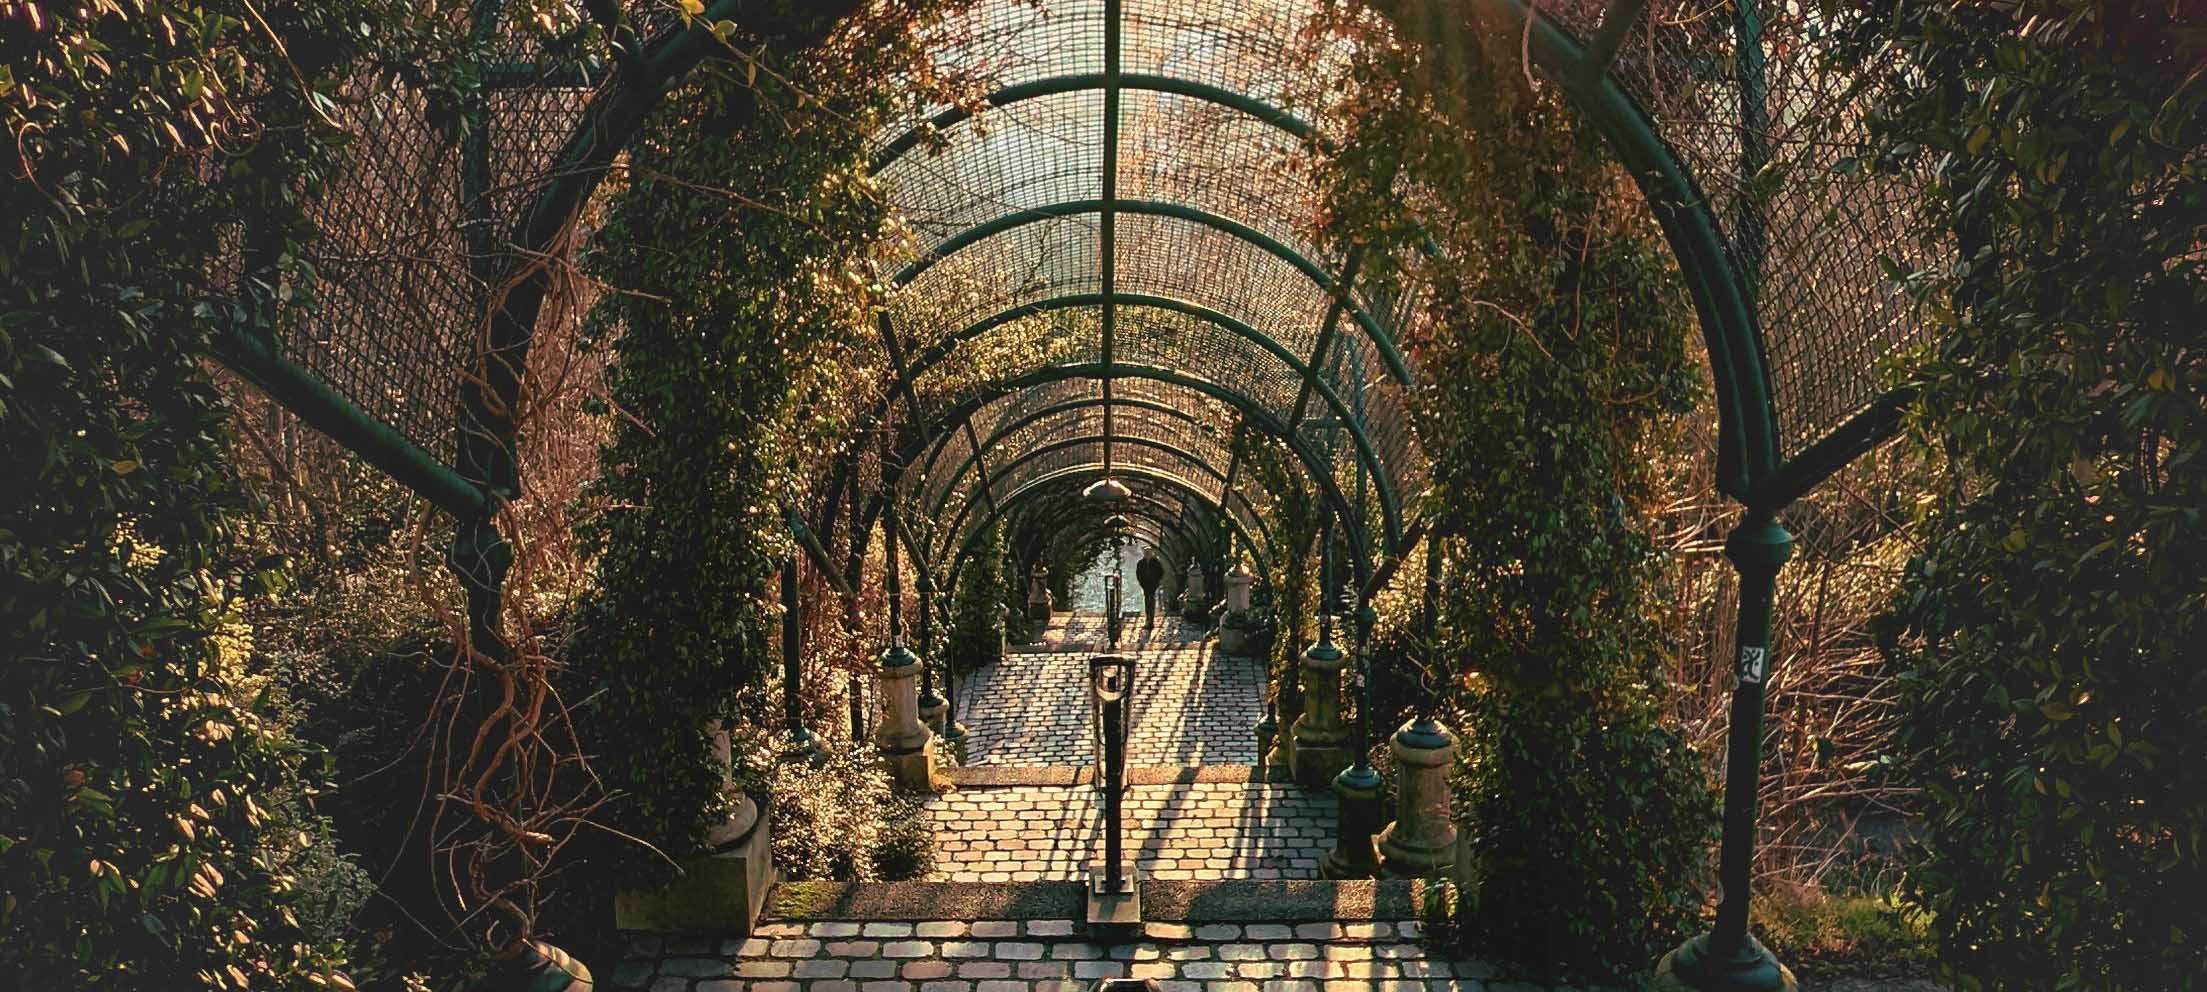 Les 10 plus beaux jardins et parcs parisiens gratuits